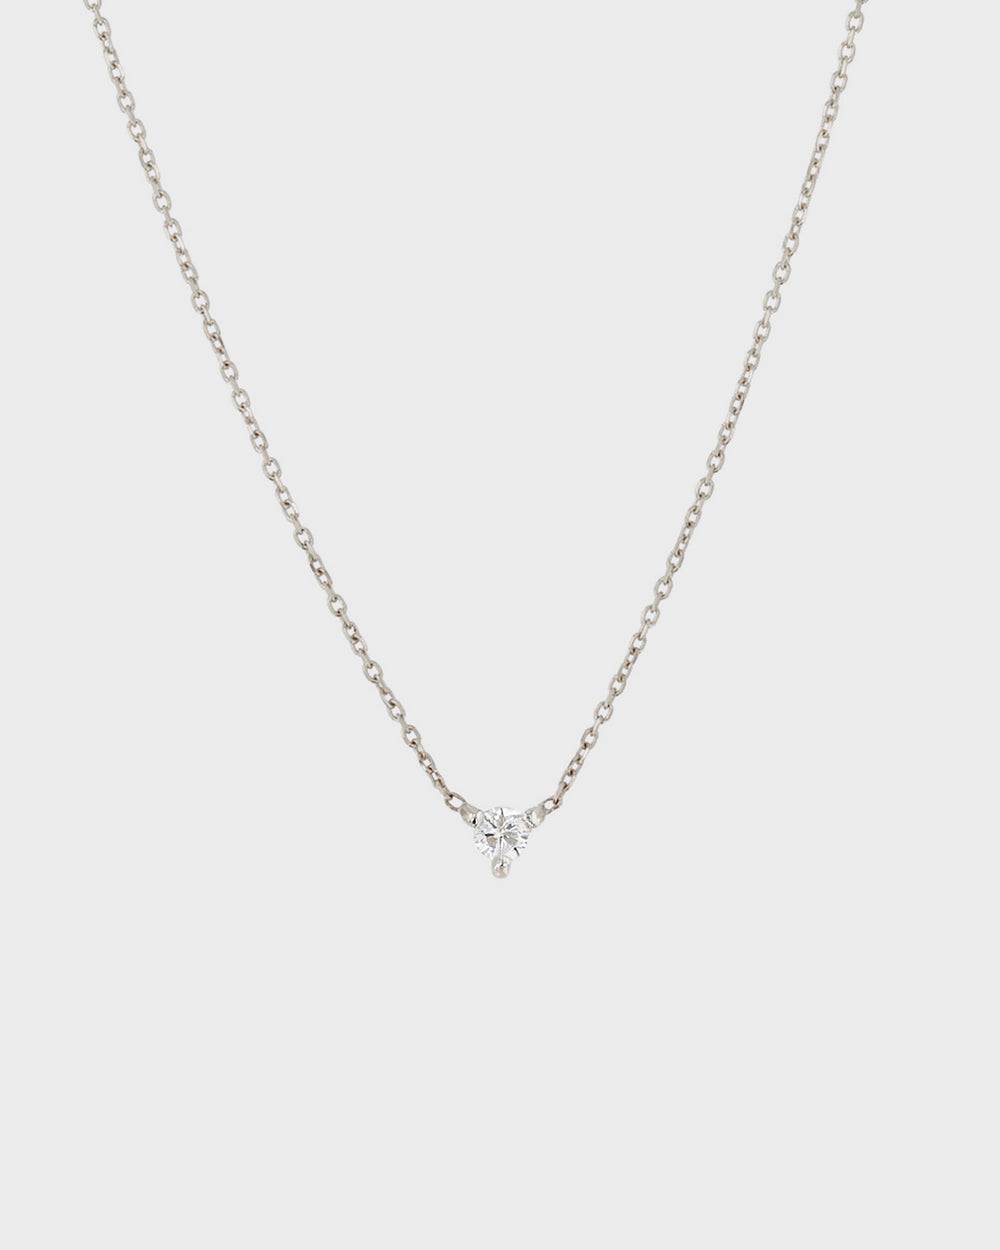 The Petite Diamond Birthstone Necklace by Sarah & Sebastian